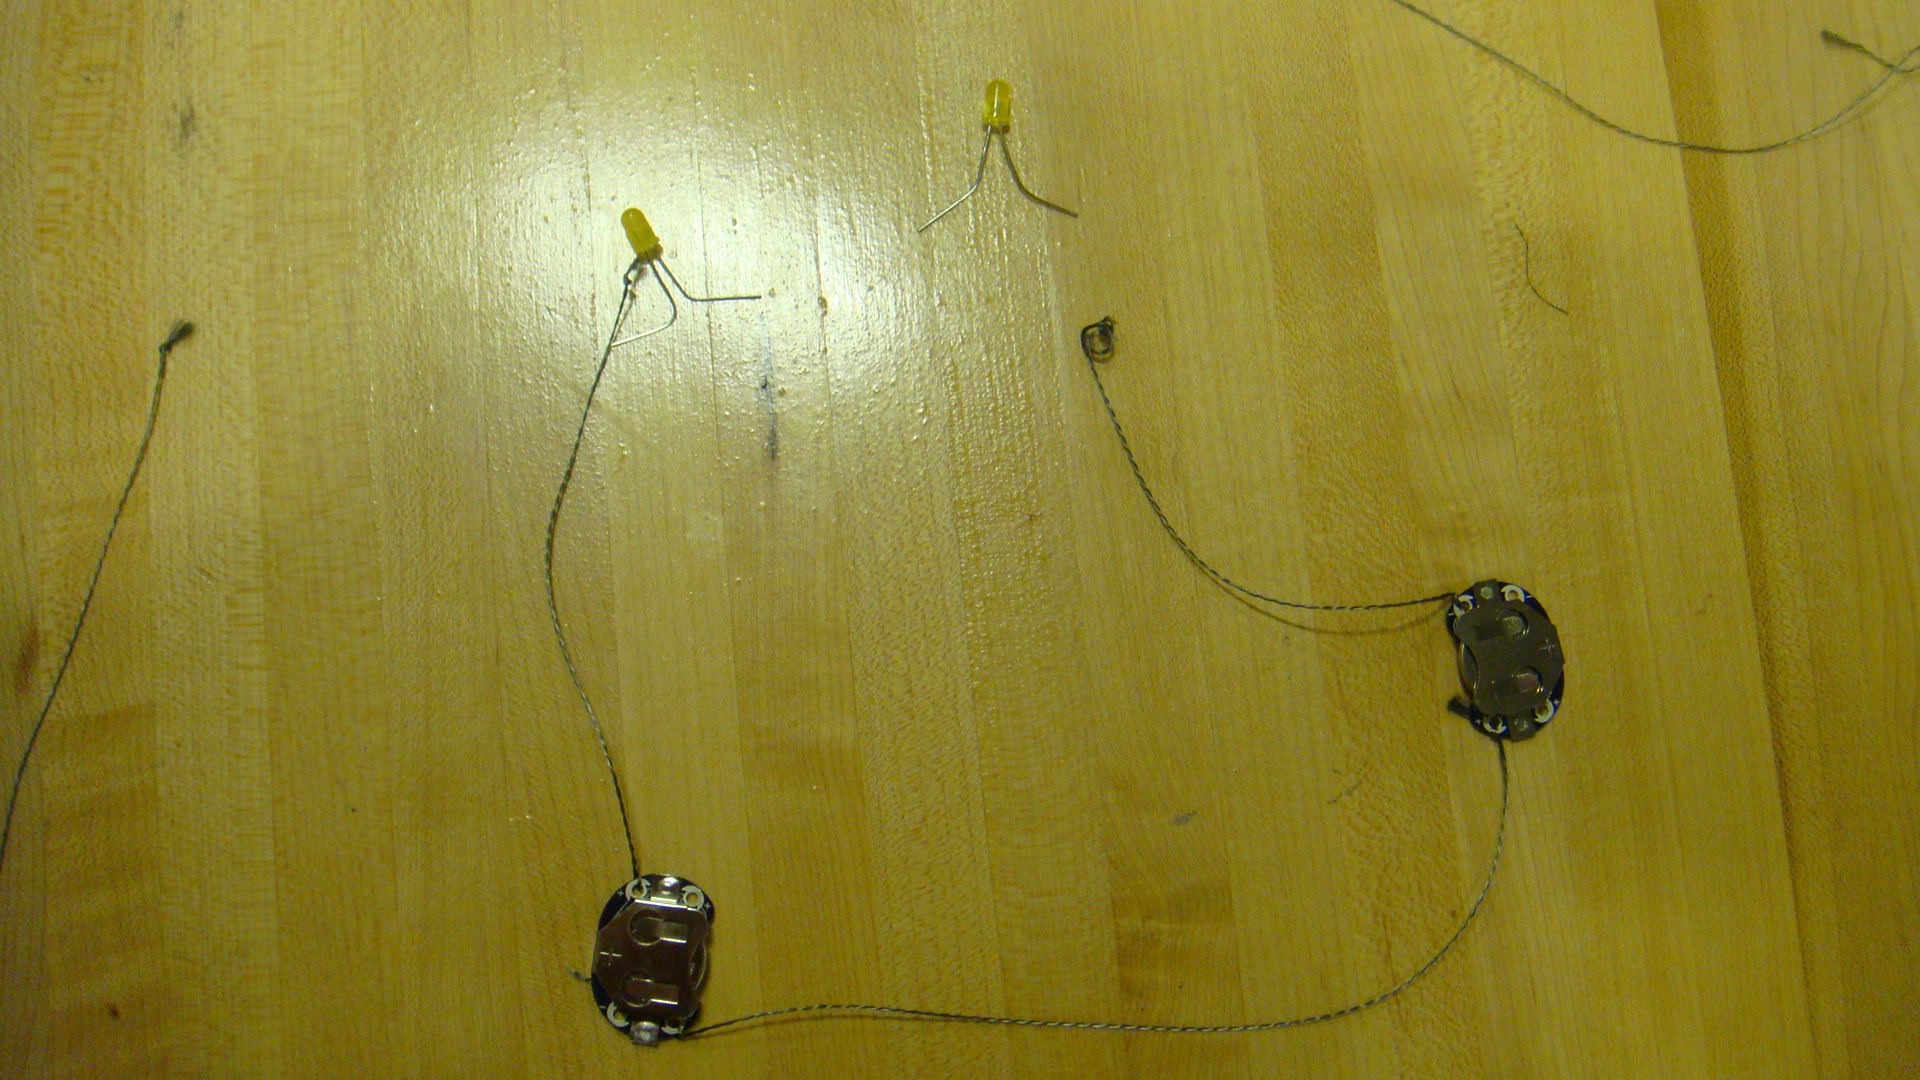 basic series circuit